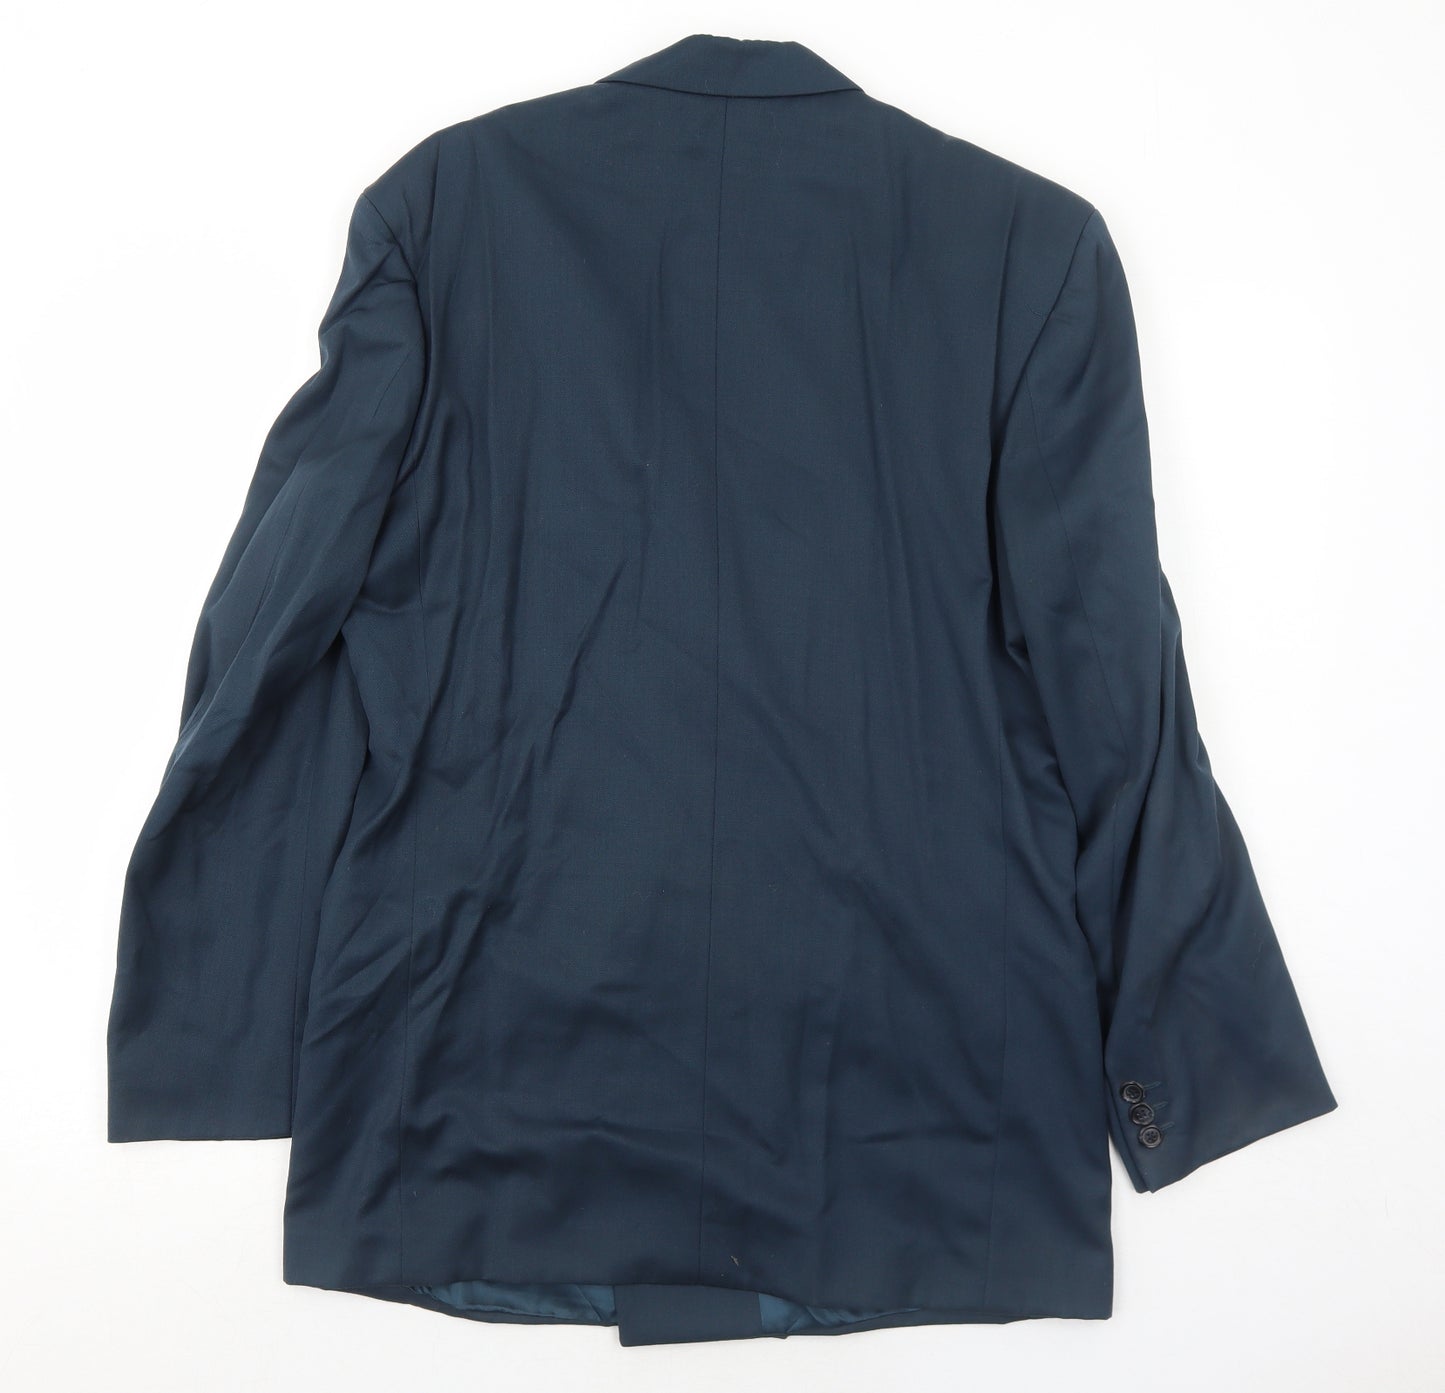 Skopes Mens Blue Polyester Jacket Suit Jacket Size 38 Regular